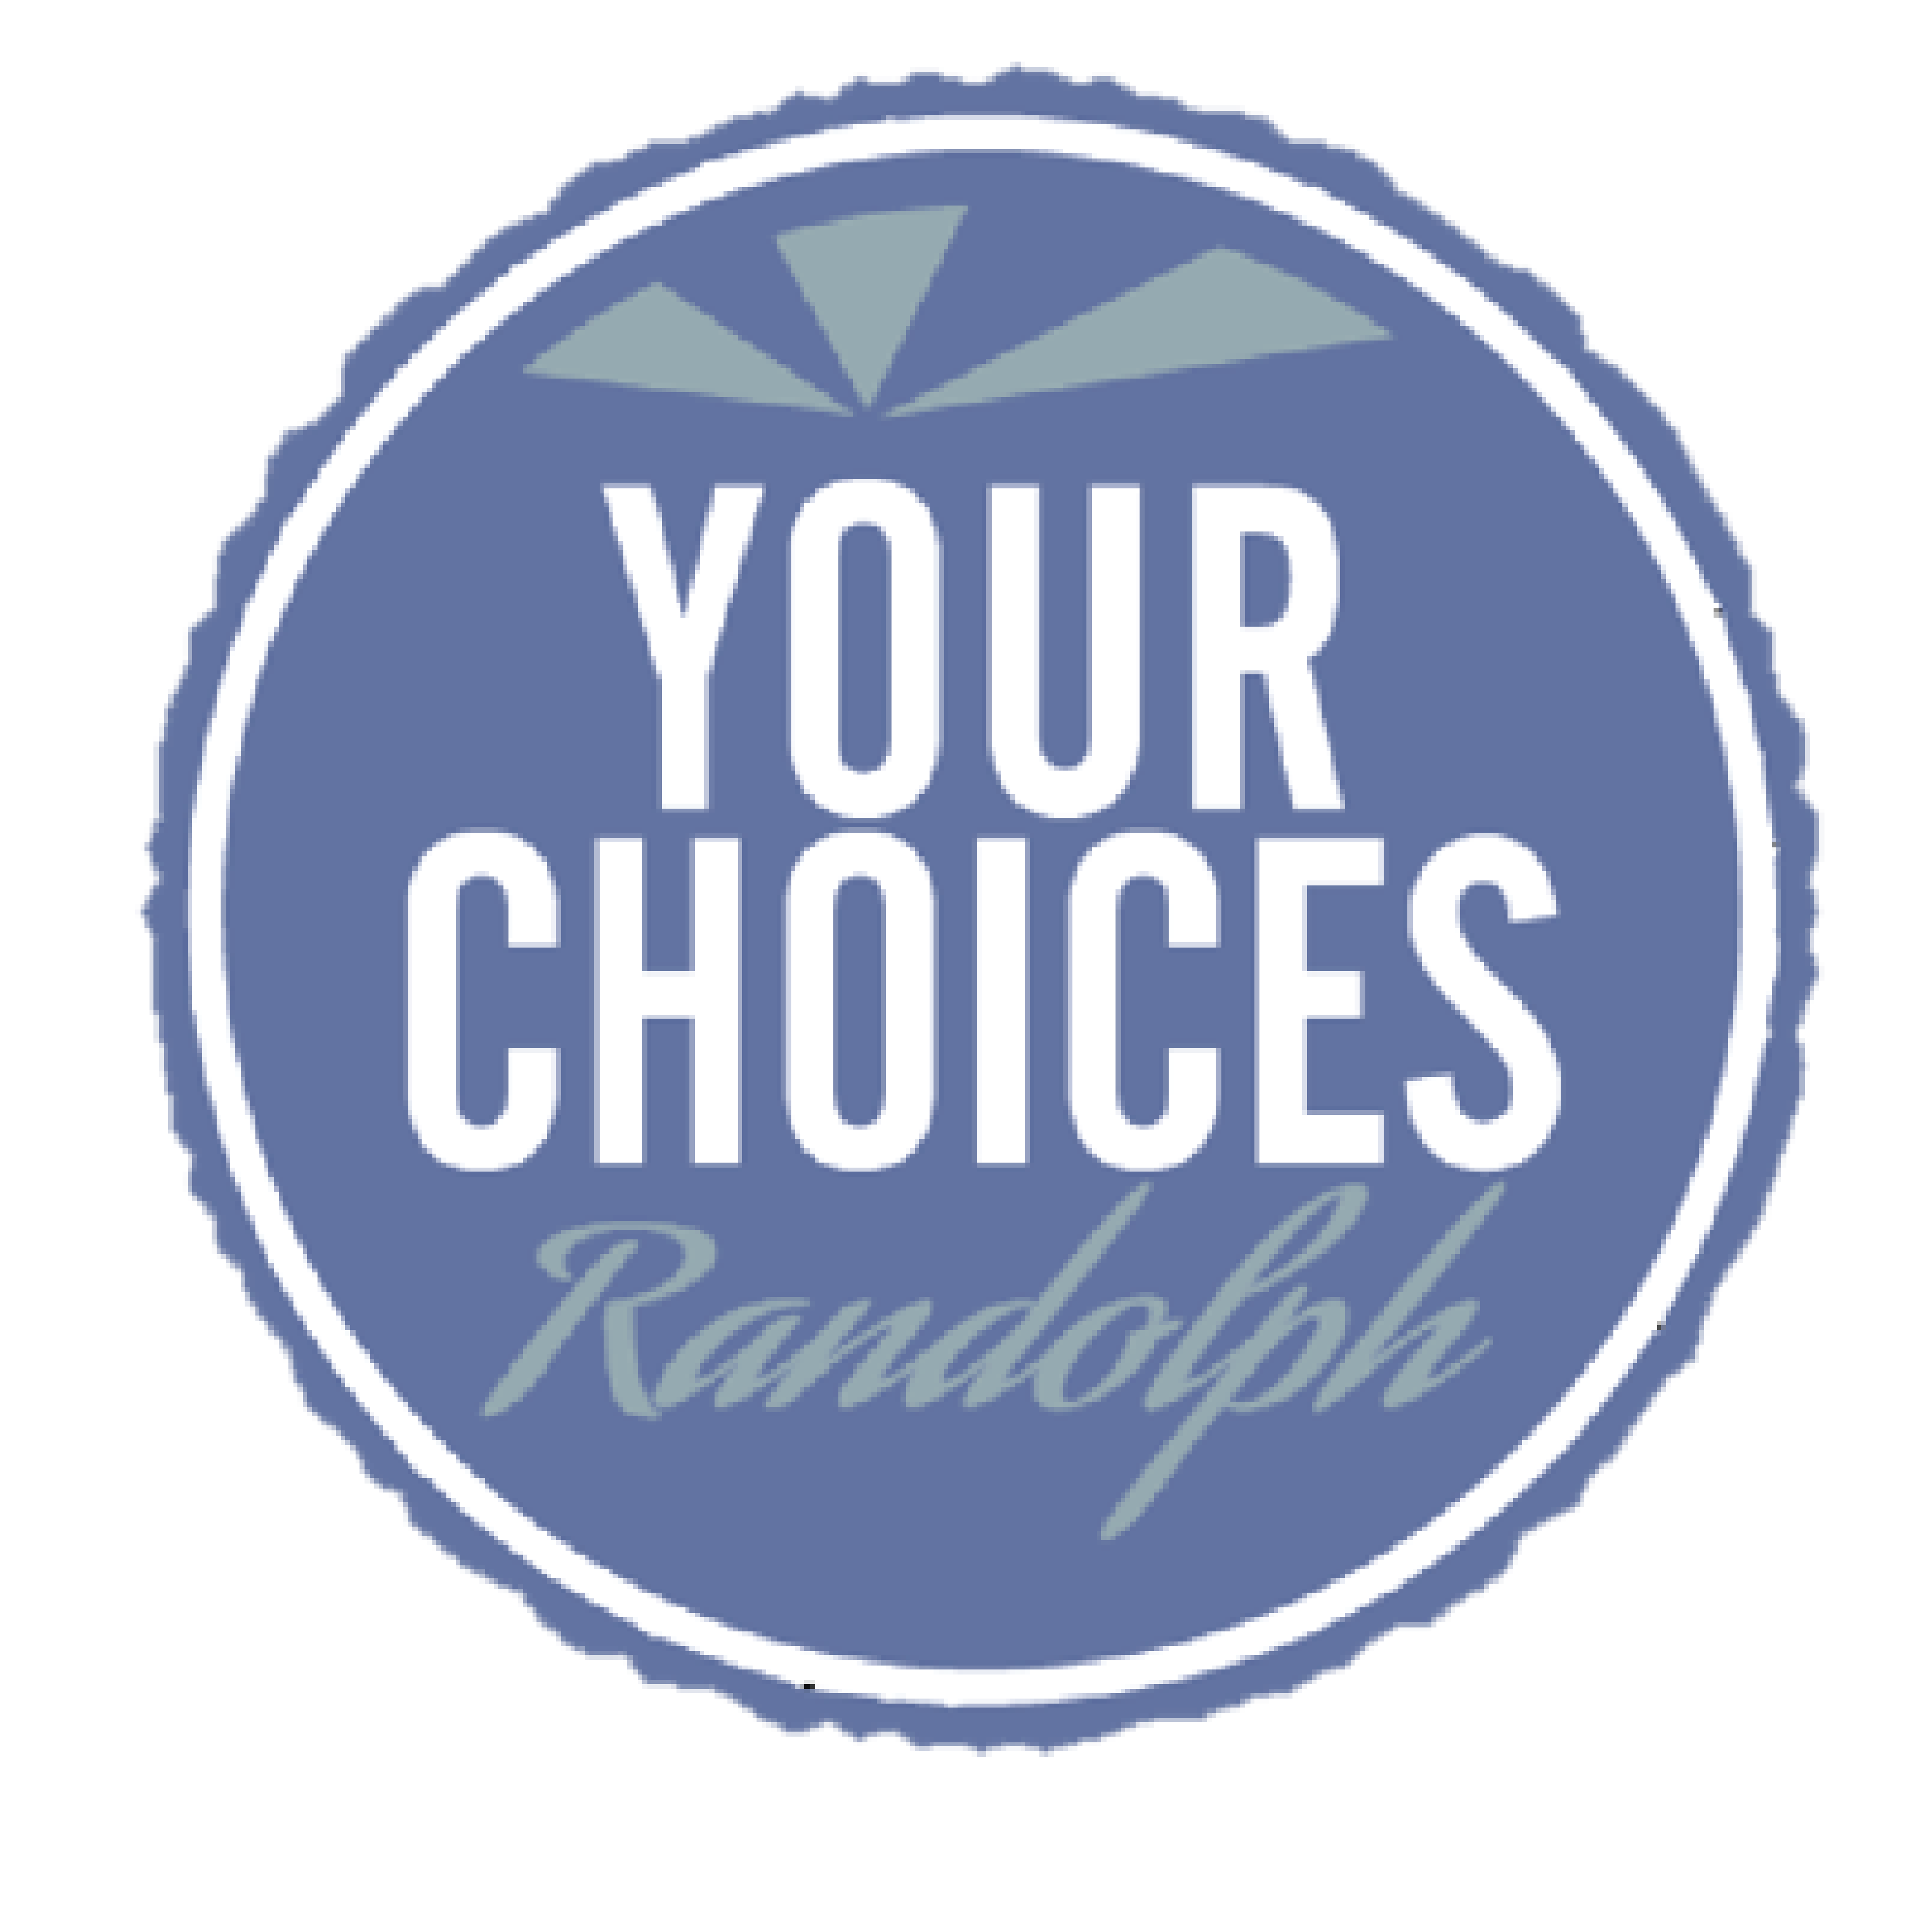 Your Choices Randolph